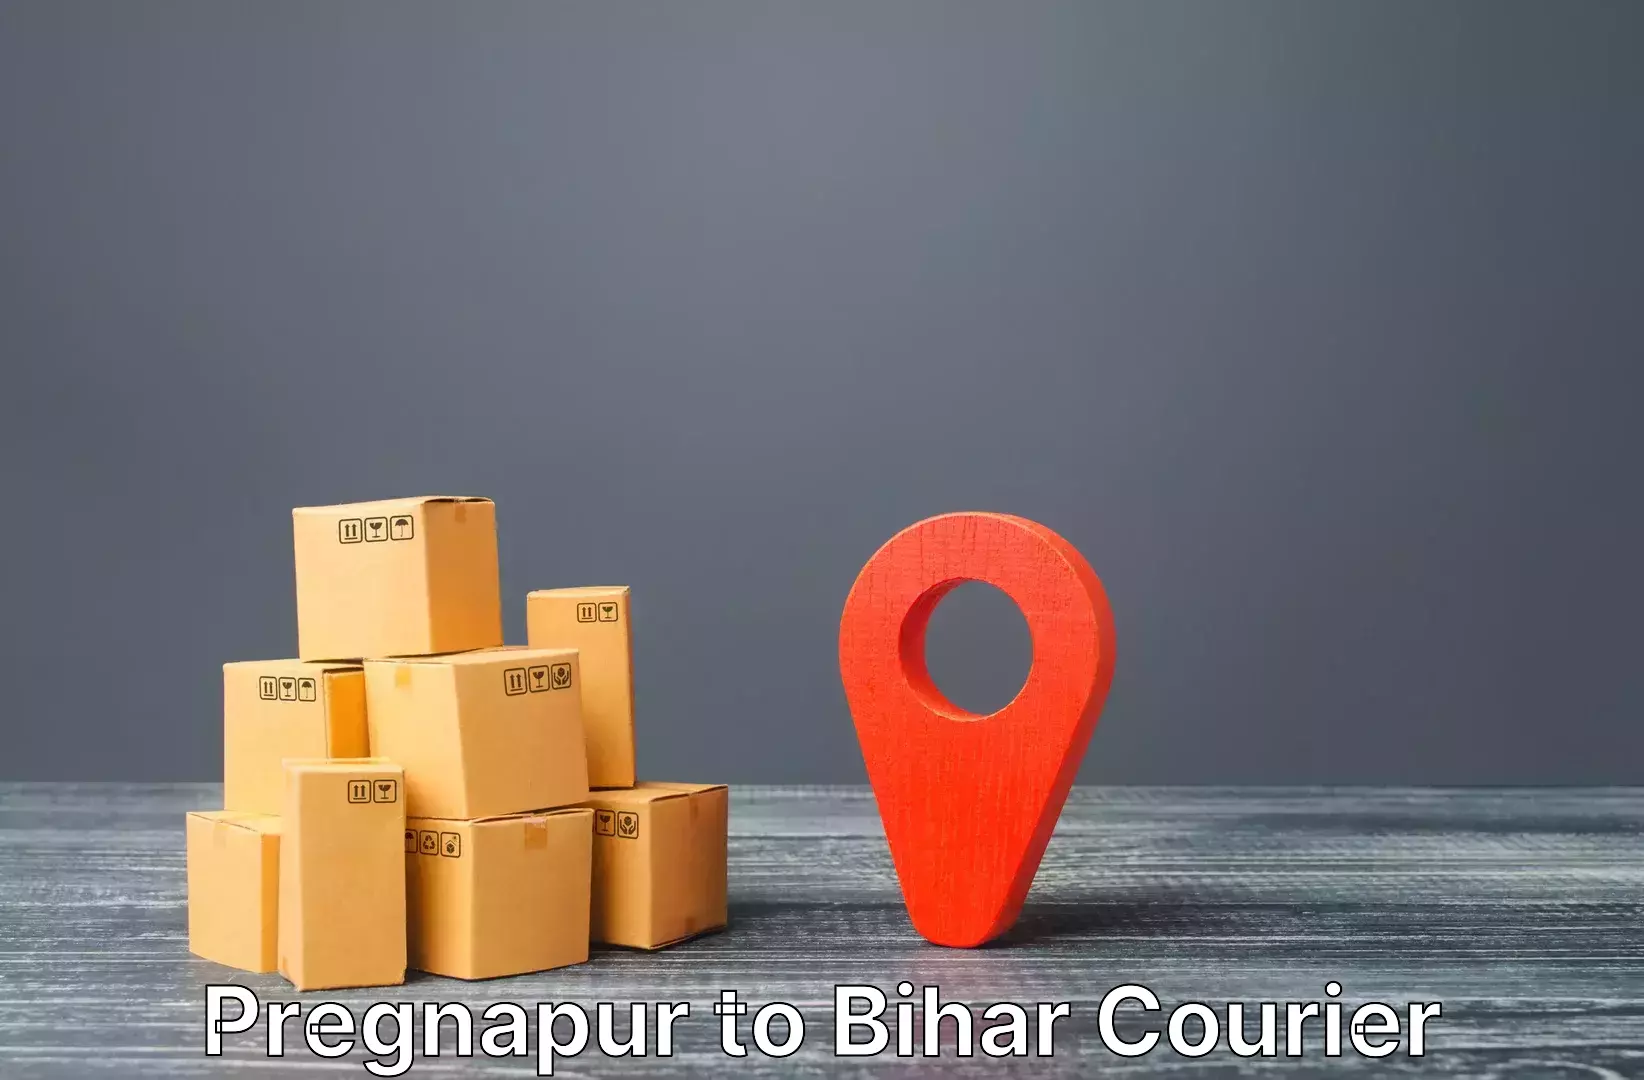 Luggage transport consulting Pregnapur to Pupri